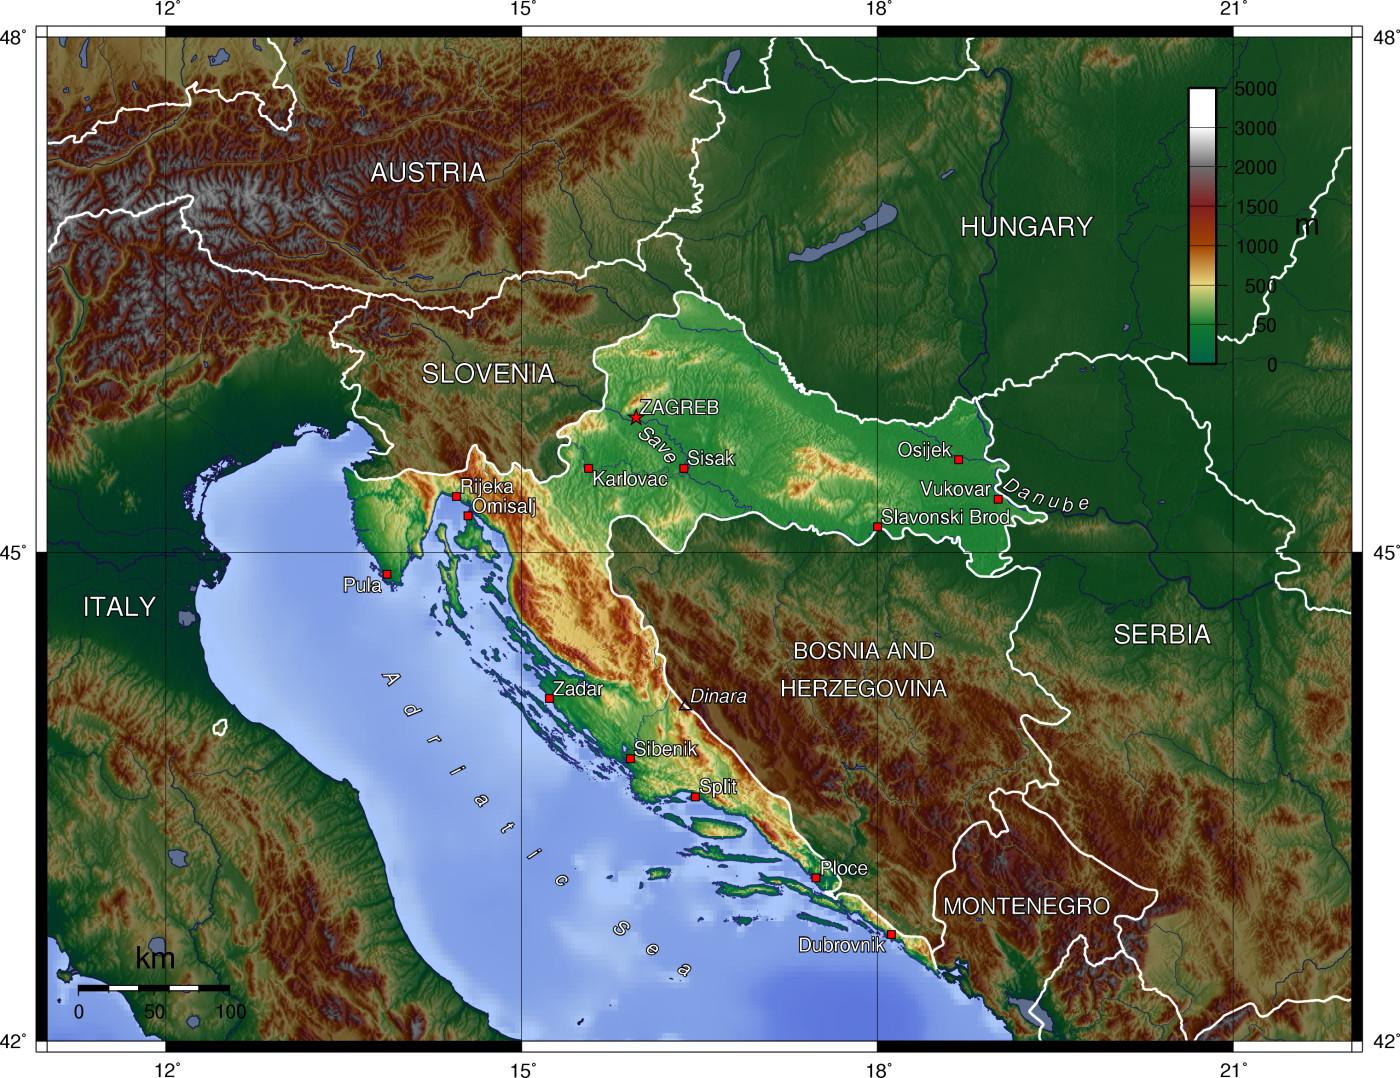 Mappa Geografica Della Croazia Topografia E Caratteristiche Fisiche